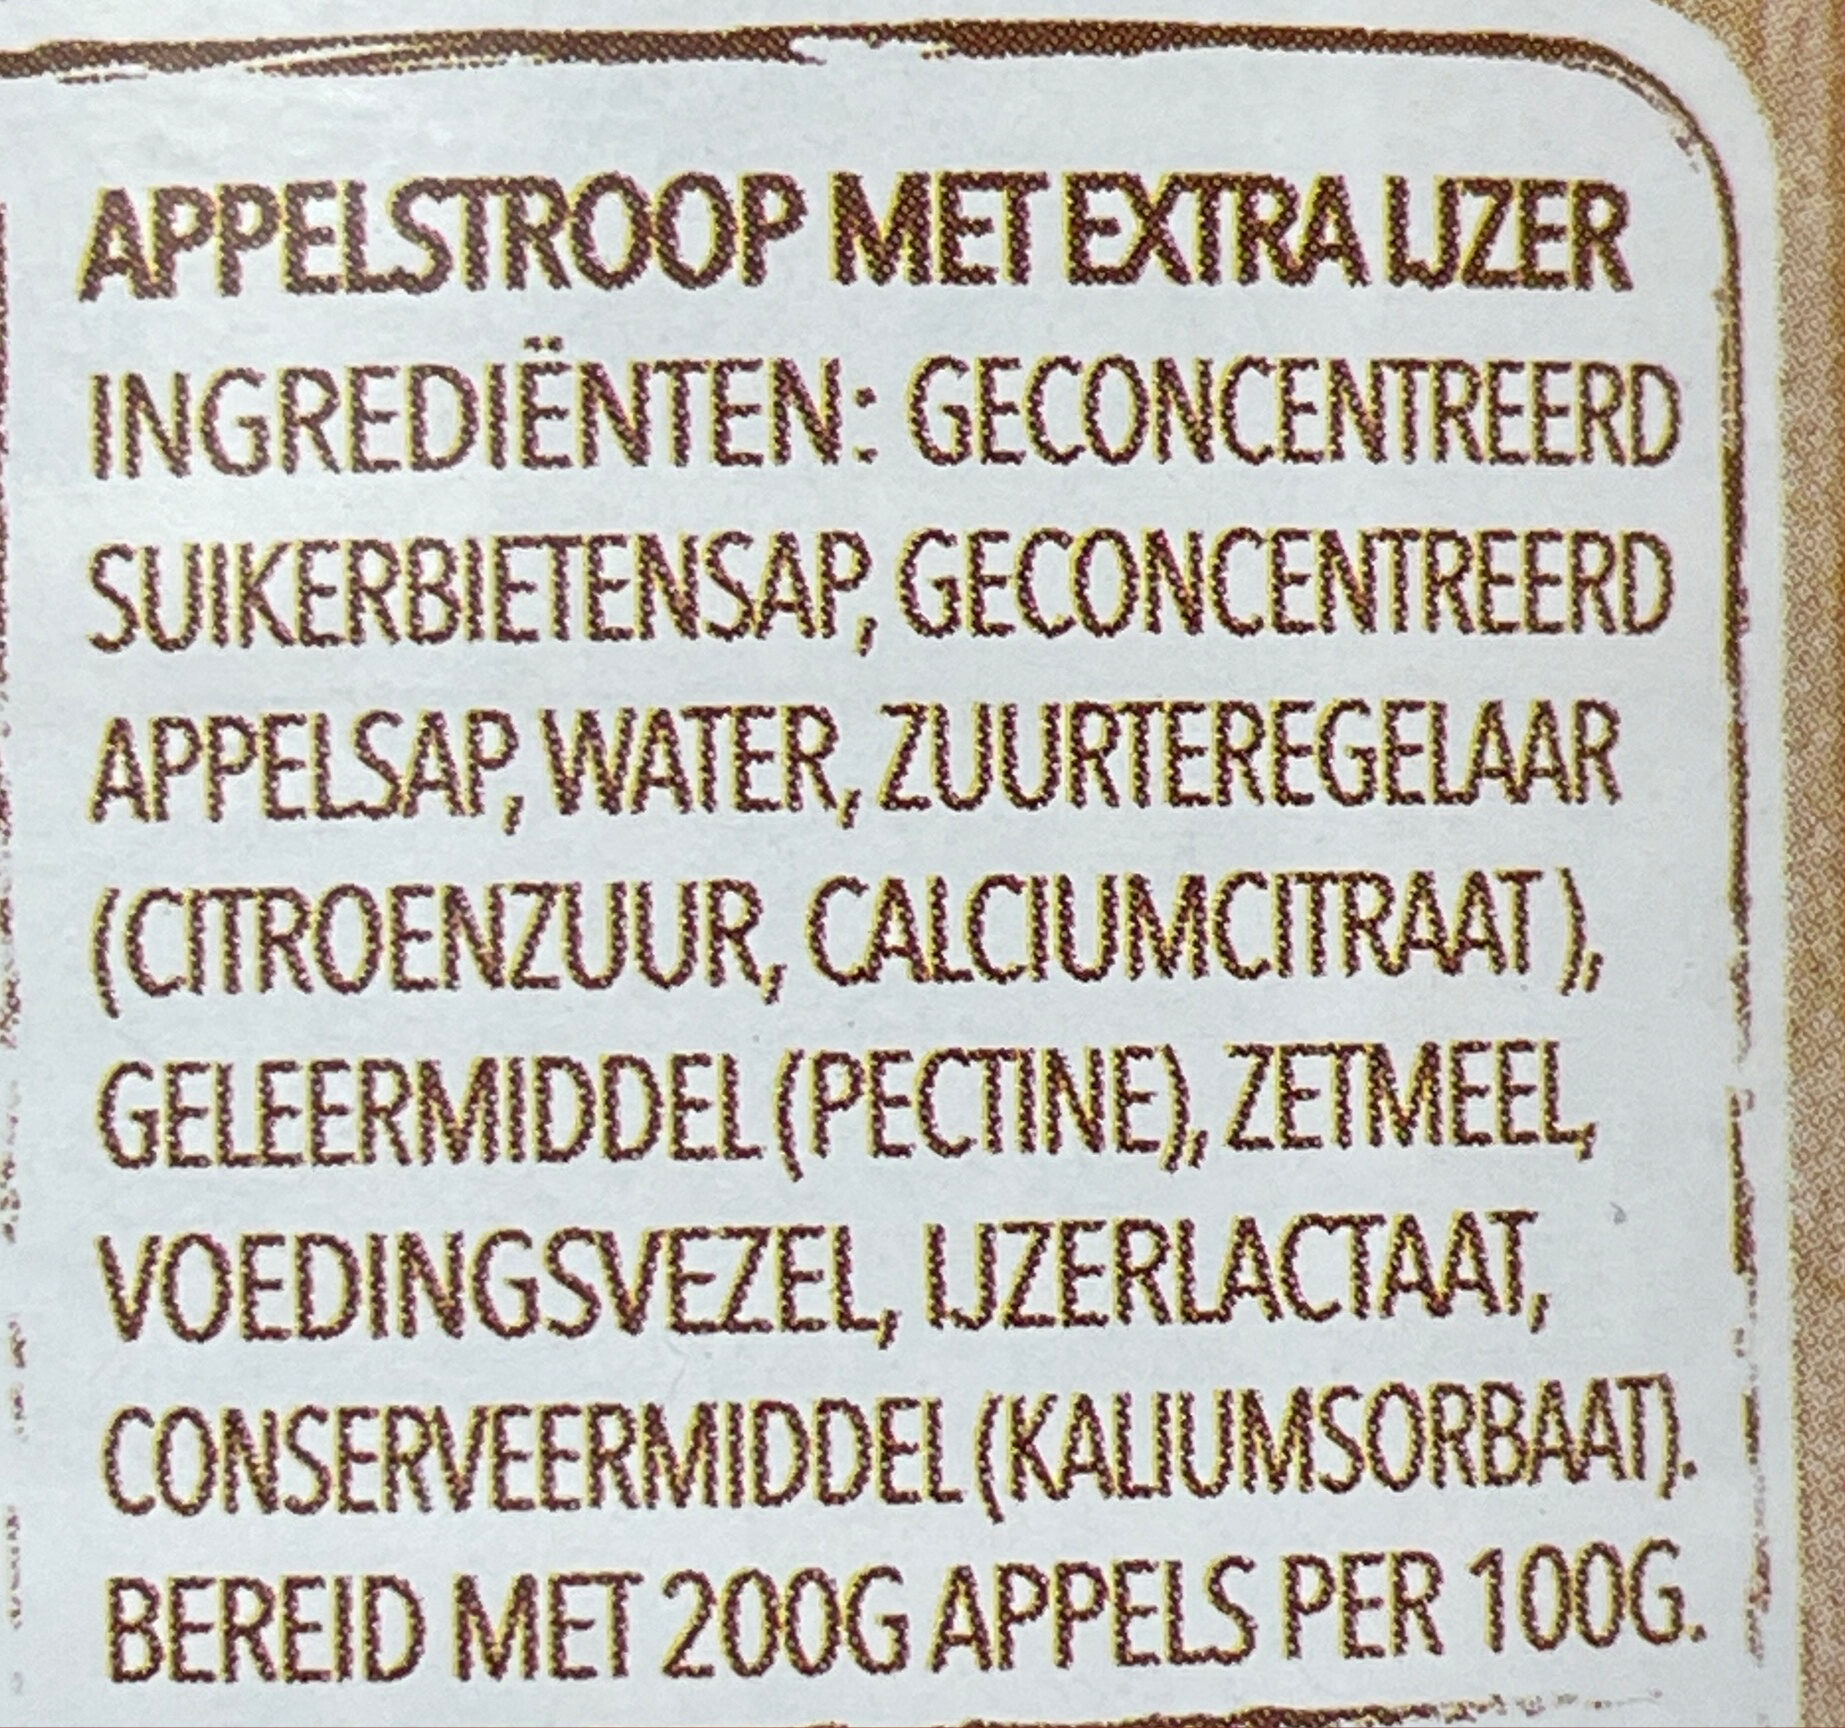 Appelstroop Minder Zoet - Ingrediënten